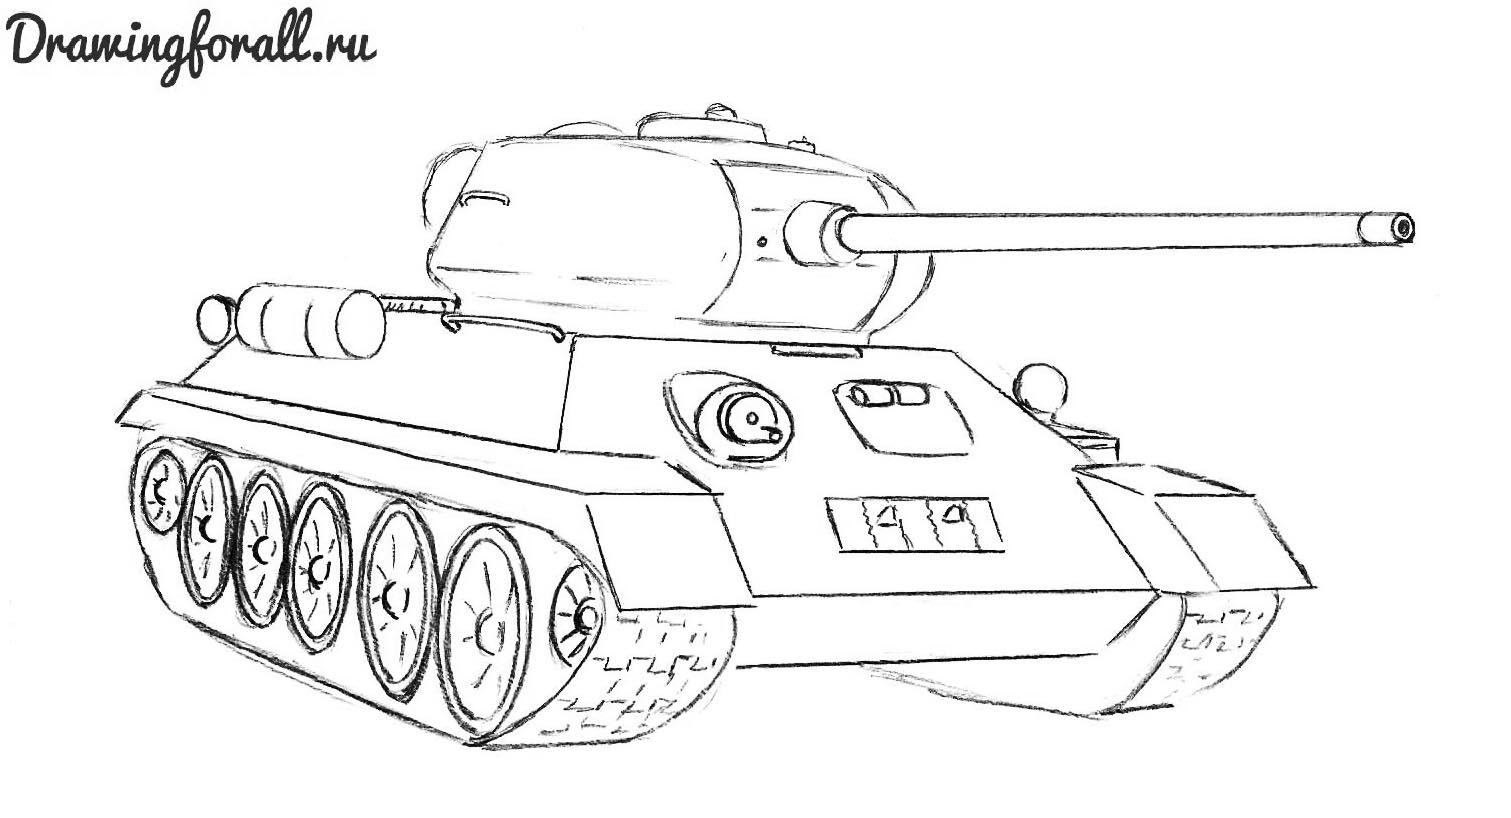 Как нарисовать танк т 34 карандашом поэтапно